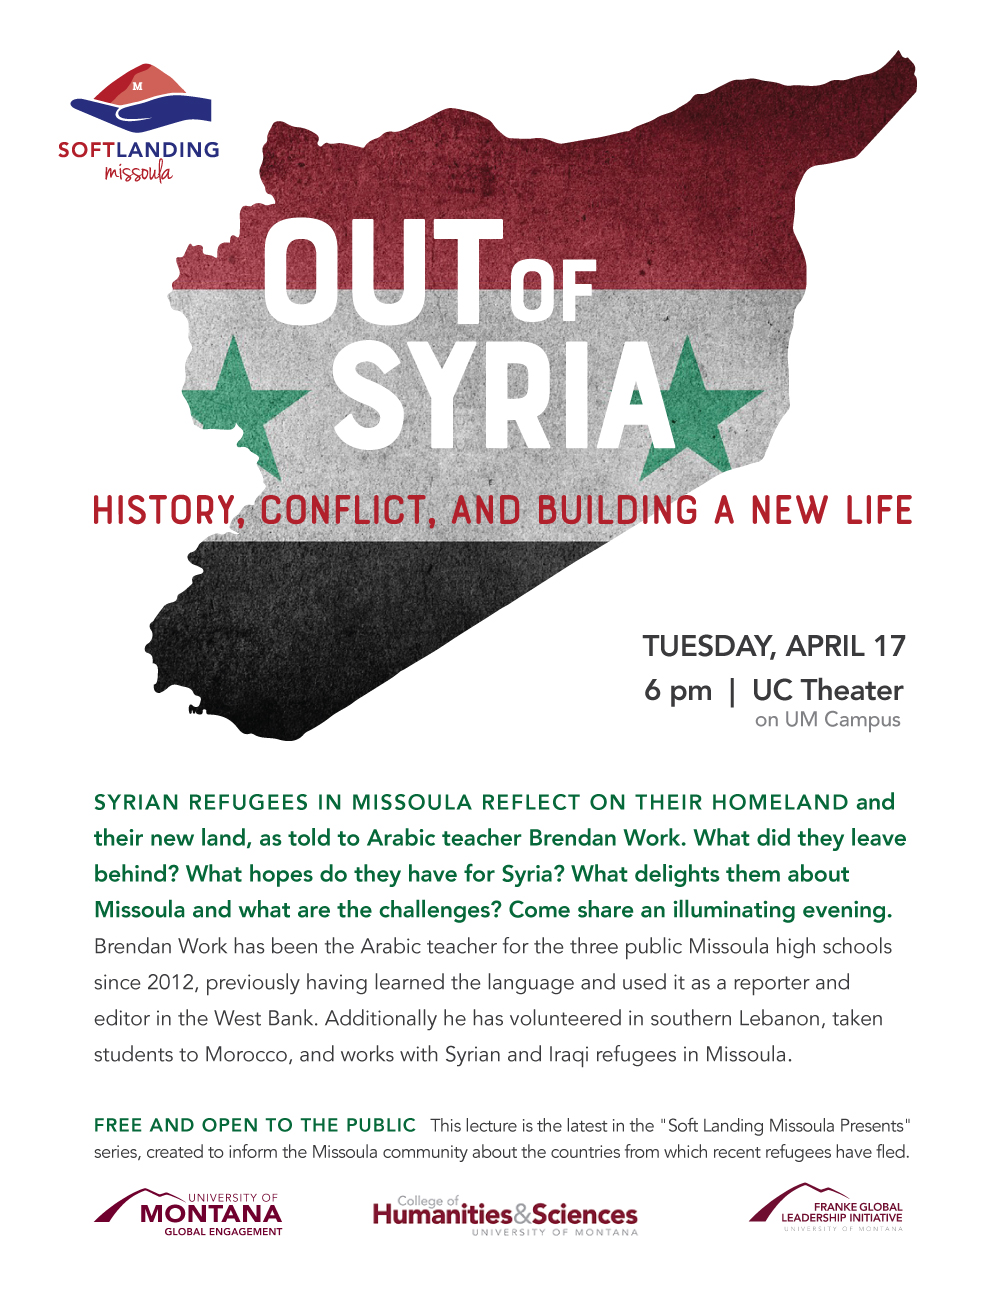 SLM-SyriaLecture-April2018-03.jpg